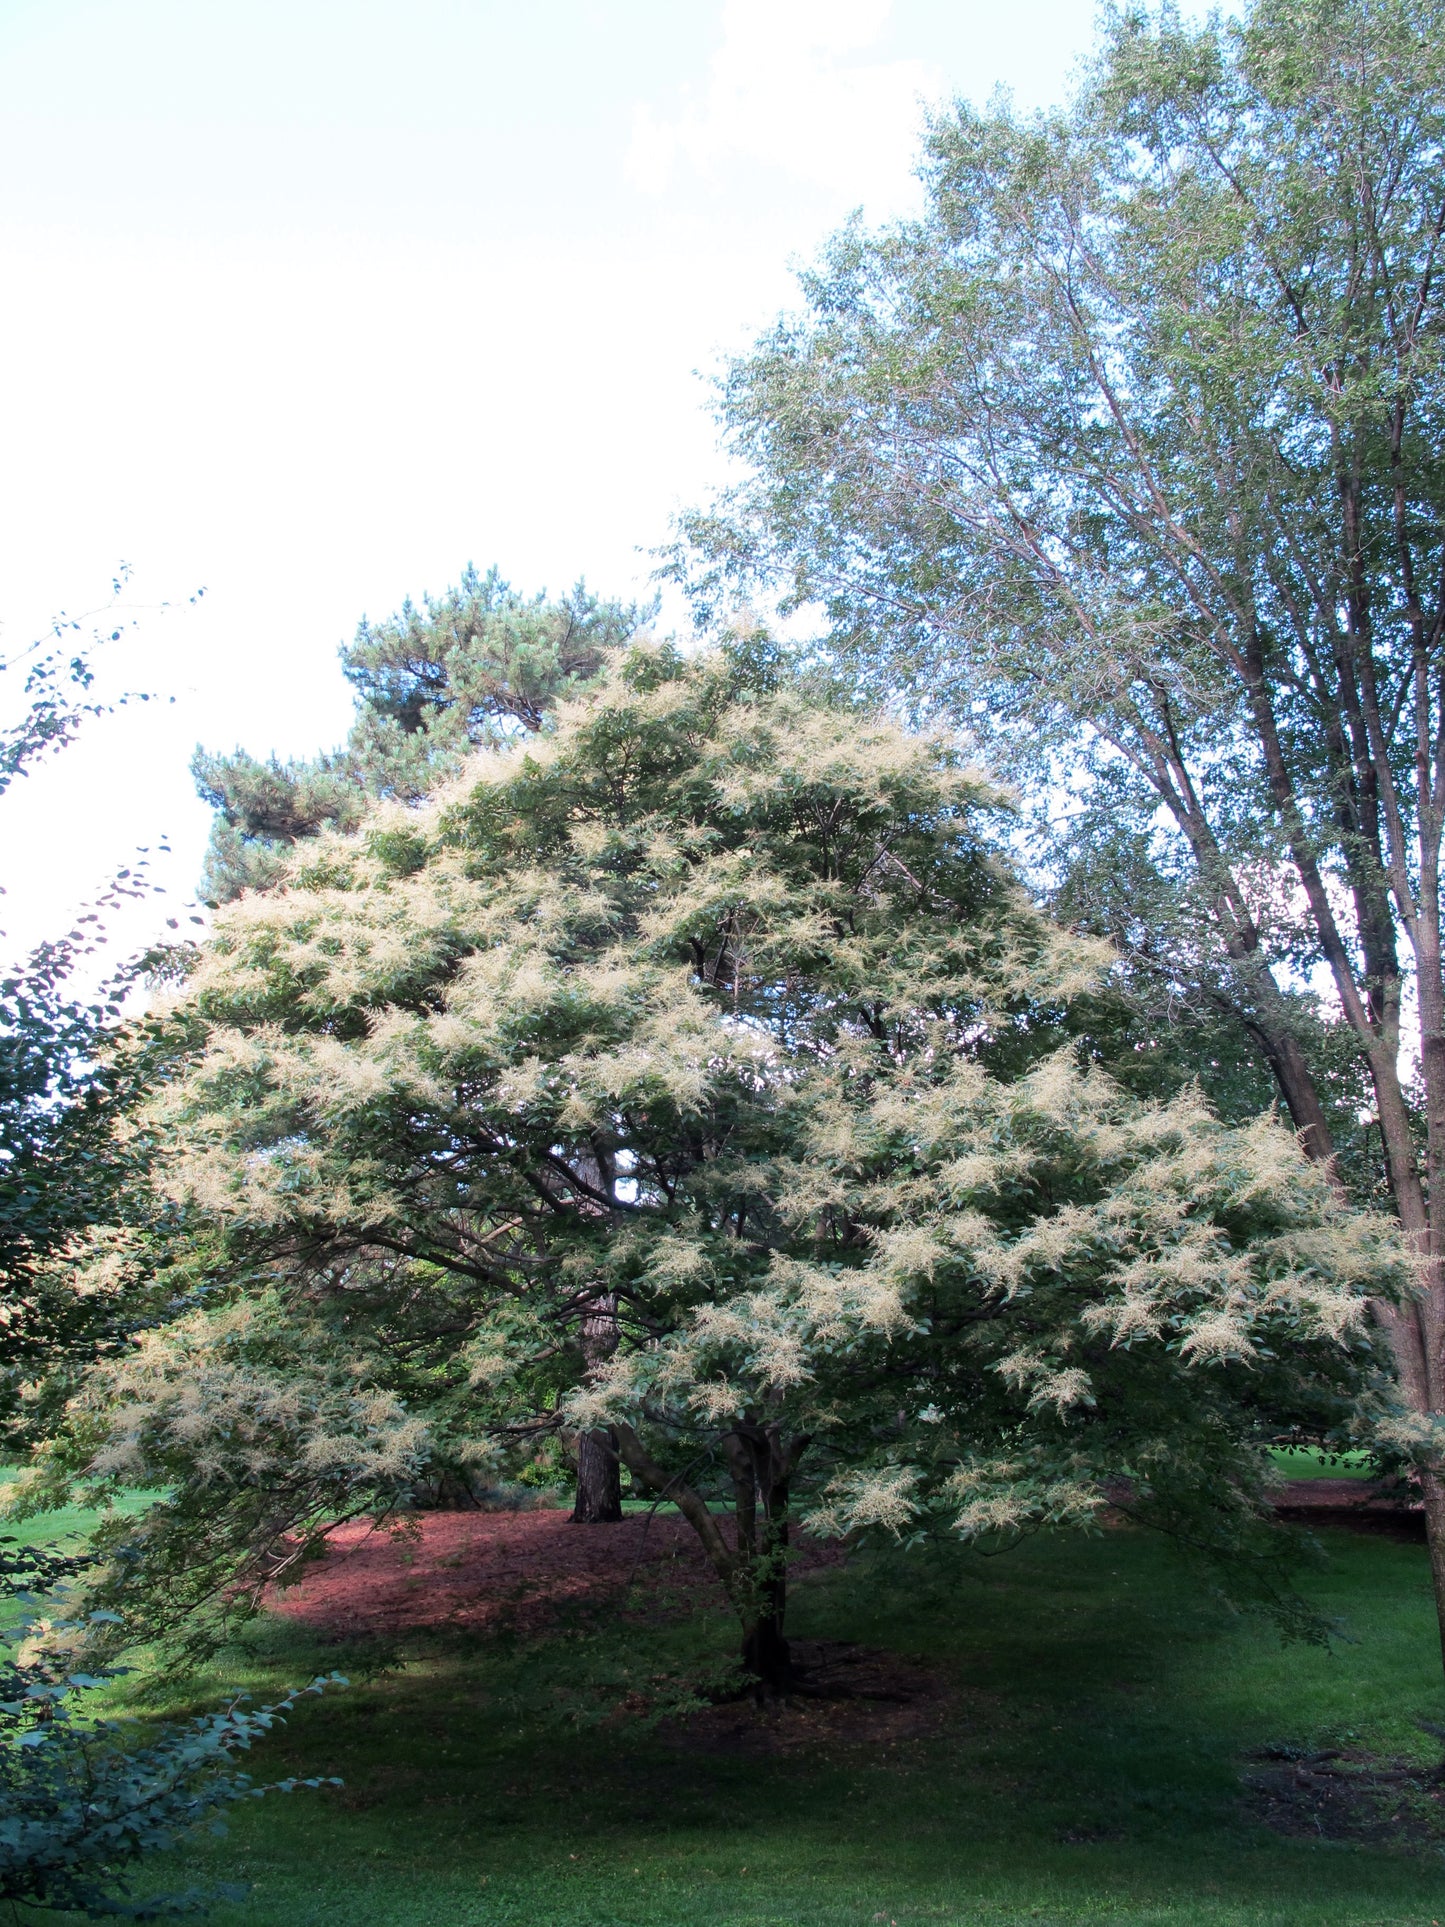 Chinese Sumac Nutgall Tree (Rhus chinensis)